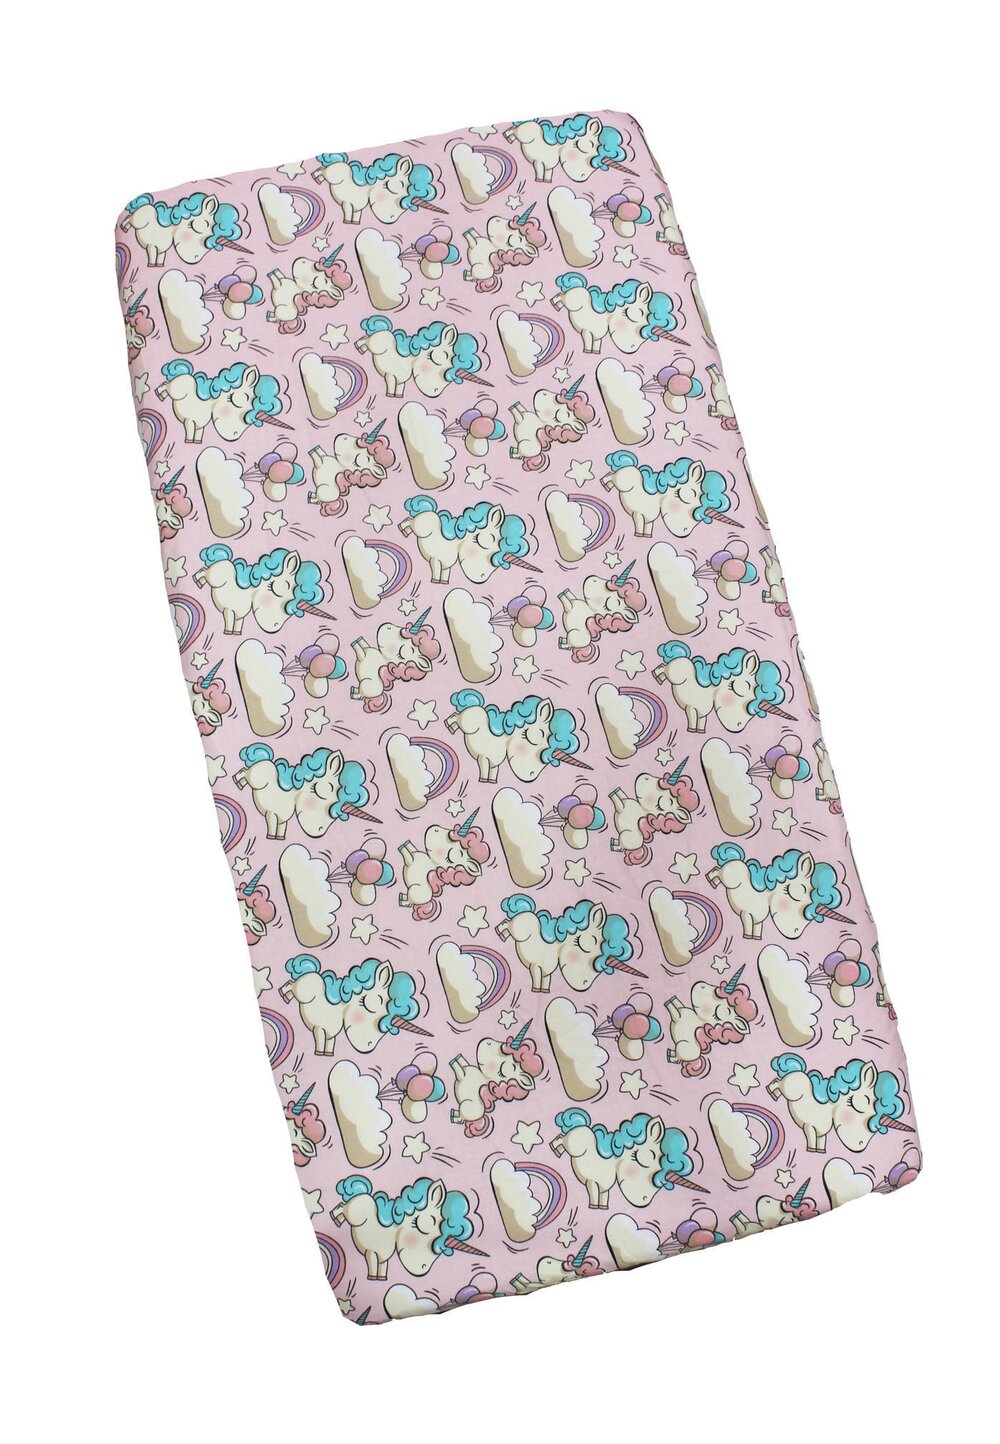 Cearceaf Prichindel, patut 120×60 cm, unicorn, roz Prichindel